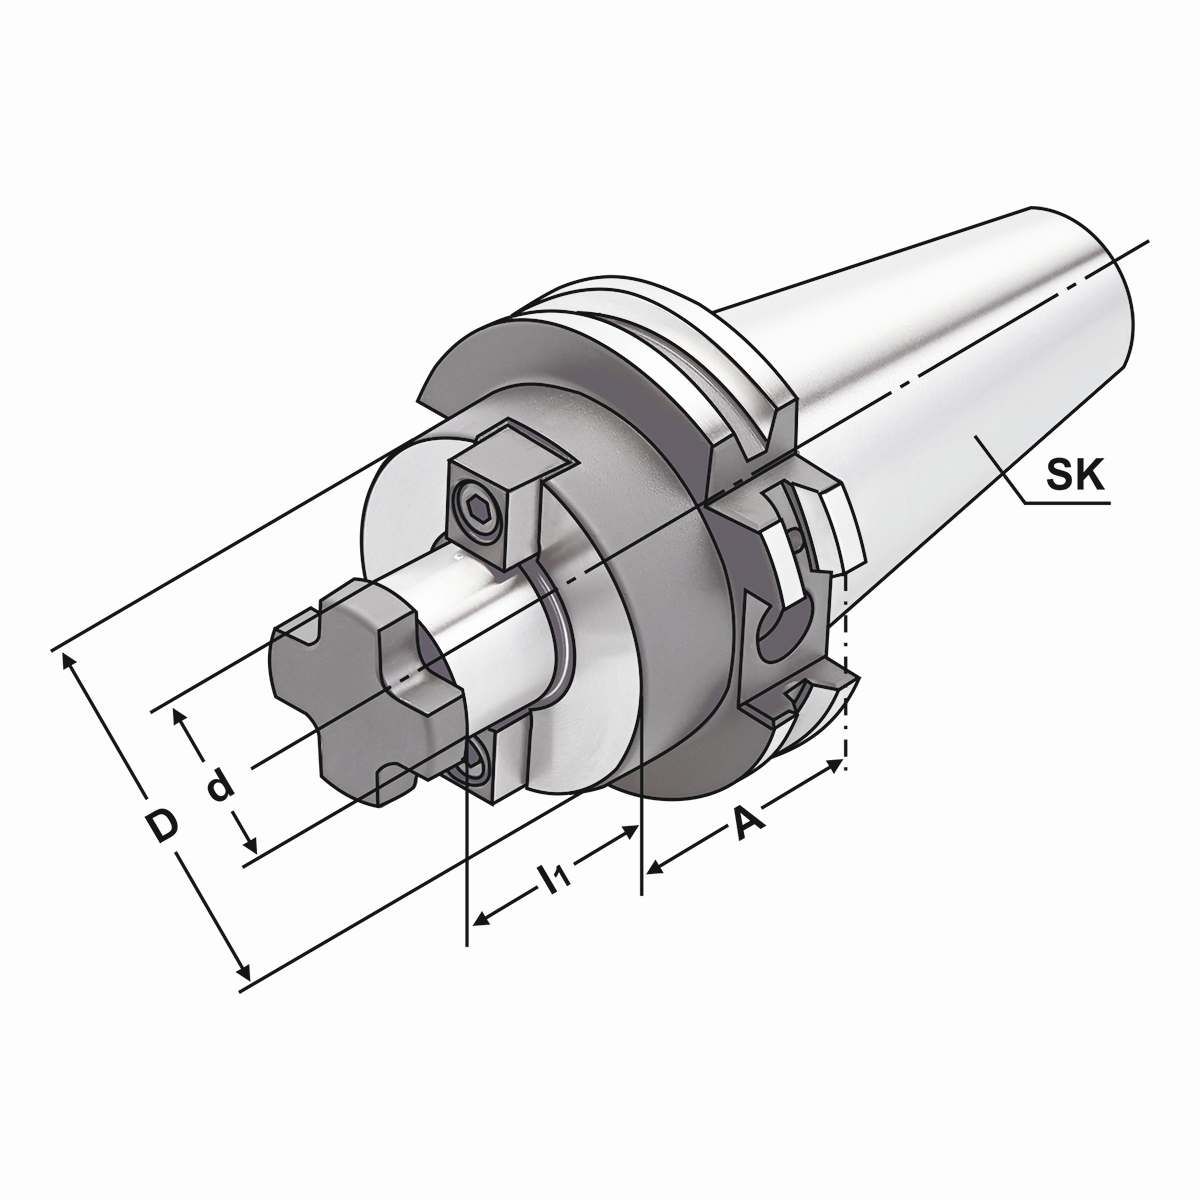 Quernut-Aufsteckdorn SK 30-22-40 mit vergrößertem Bunddurchmesser